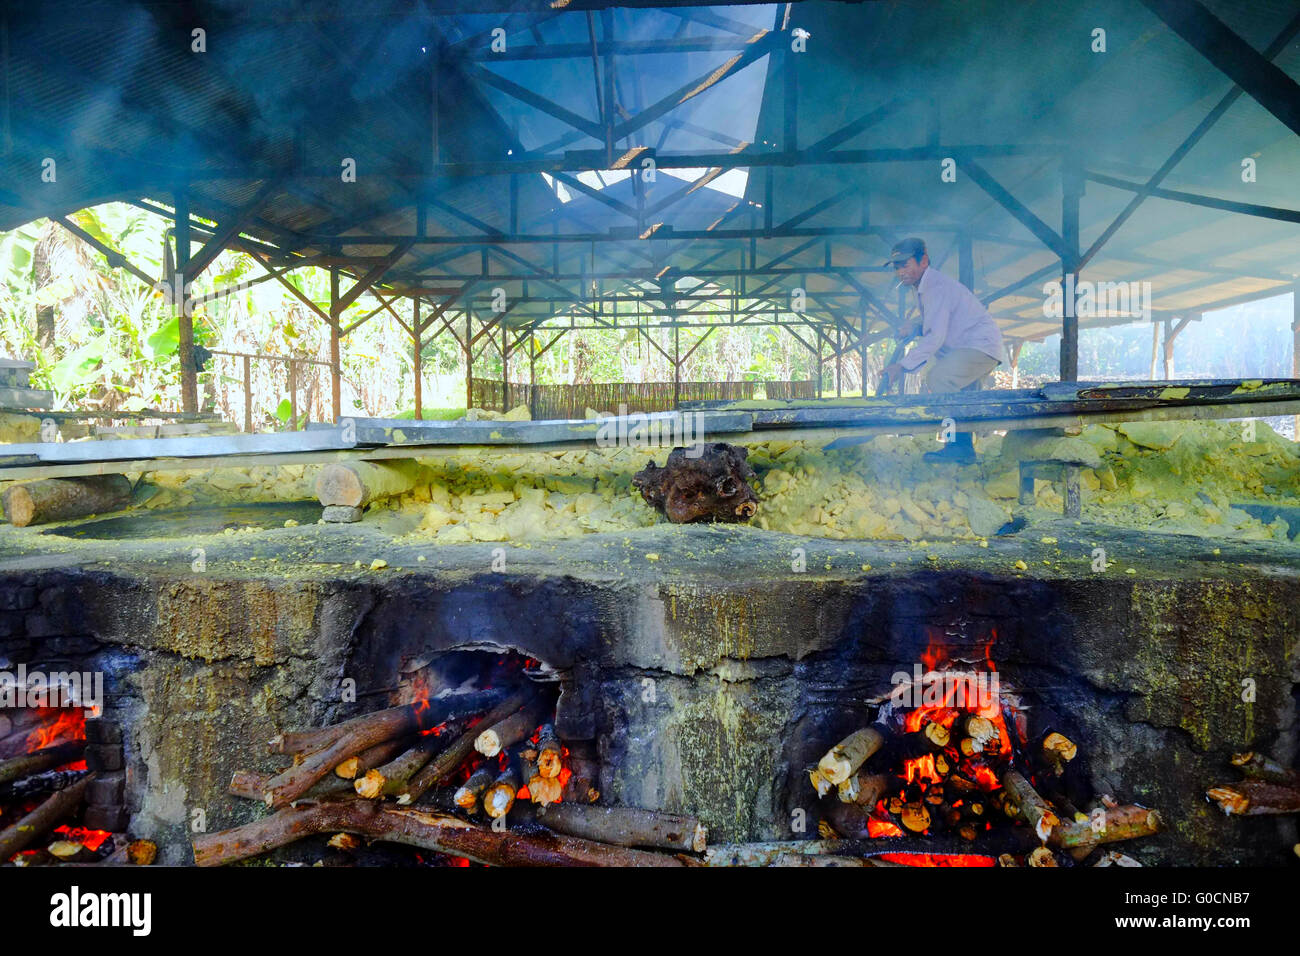 Tägliche Aktivität innerhalb der traditionellen Schwefel-Fabrik in Ijen, Indonesien. Schwefel ist eine saure vulkanische mit gelber Farbe. Stockfoto